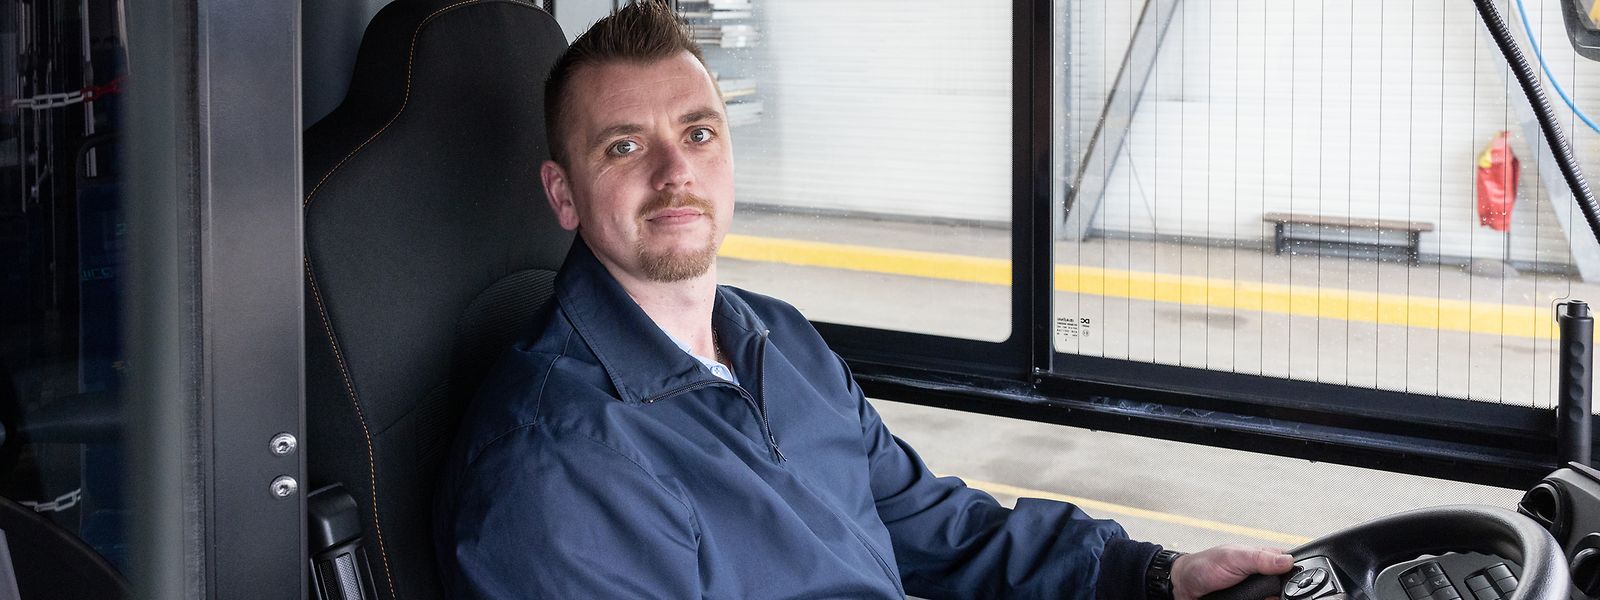 Sven Roob conduit un bus depuis 14 ans. Il aime son métier, mais pour combien de temps encore ?